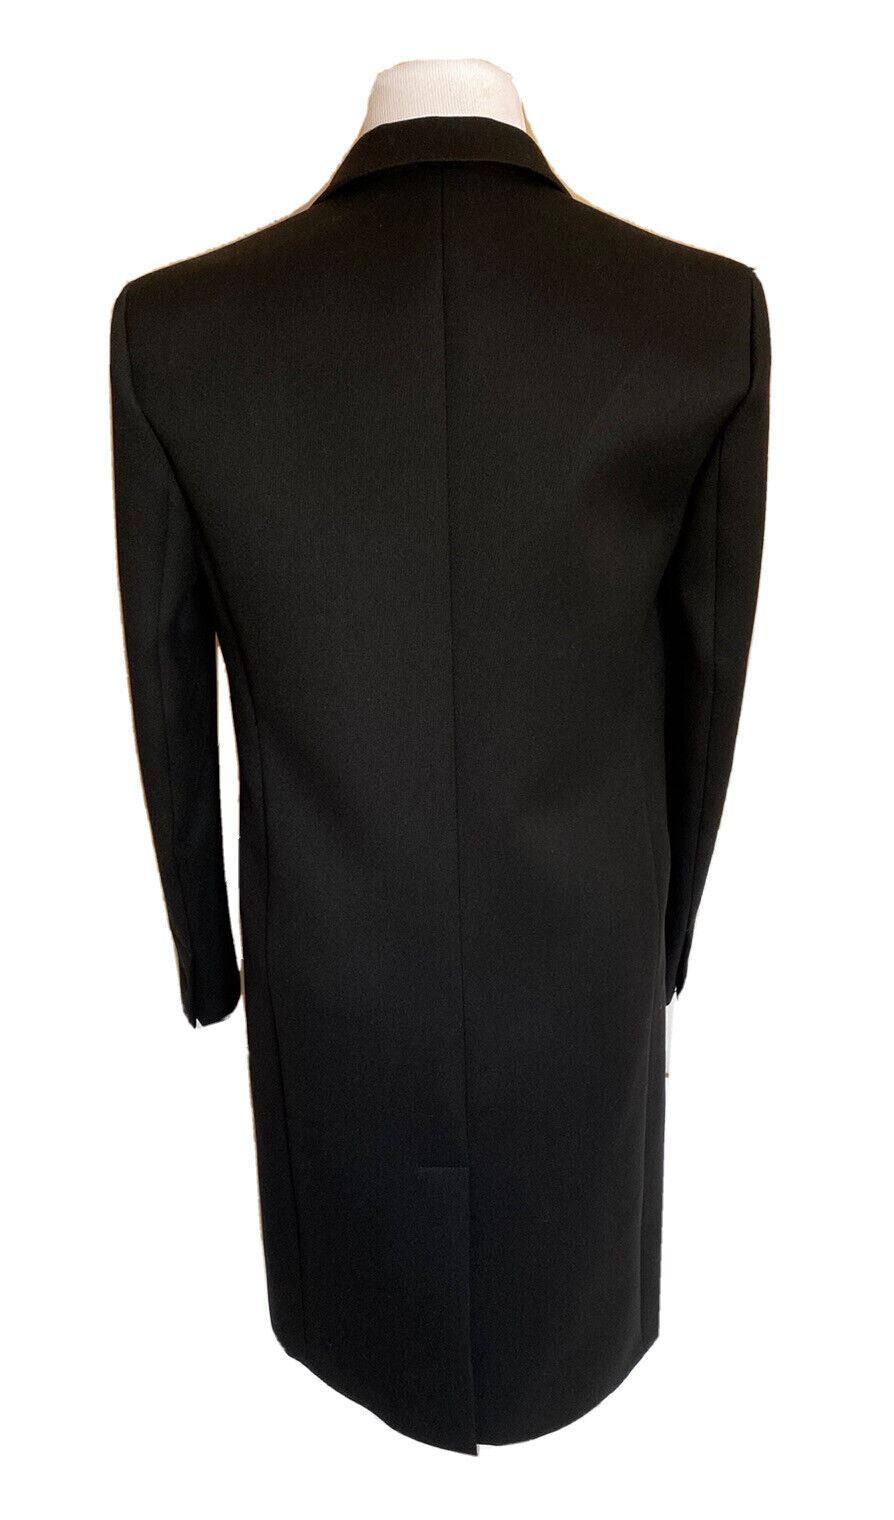 NWT 6900 долларов США Bottega Veneta Мужское черное кашемировое пальто 38 США (48 евро) 603547 Италия